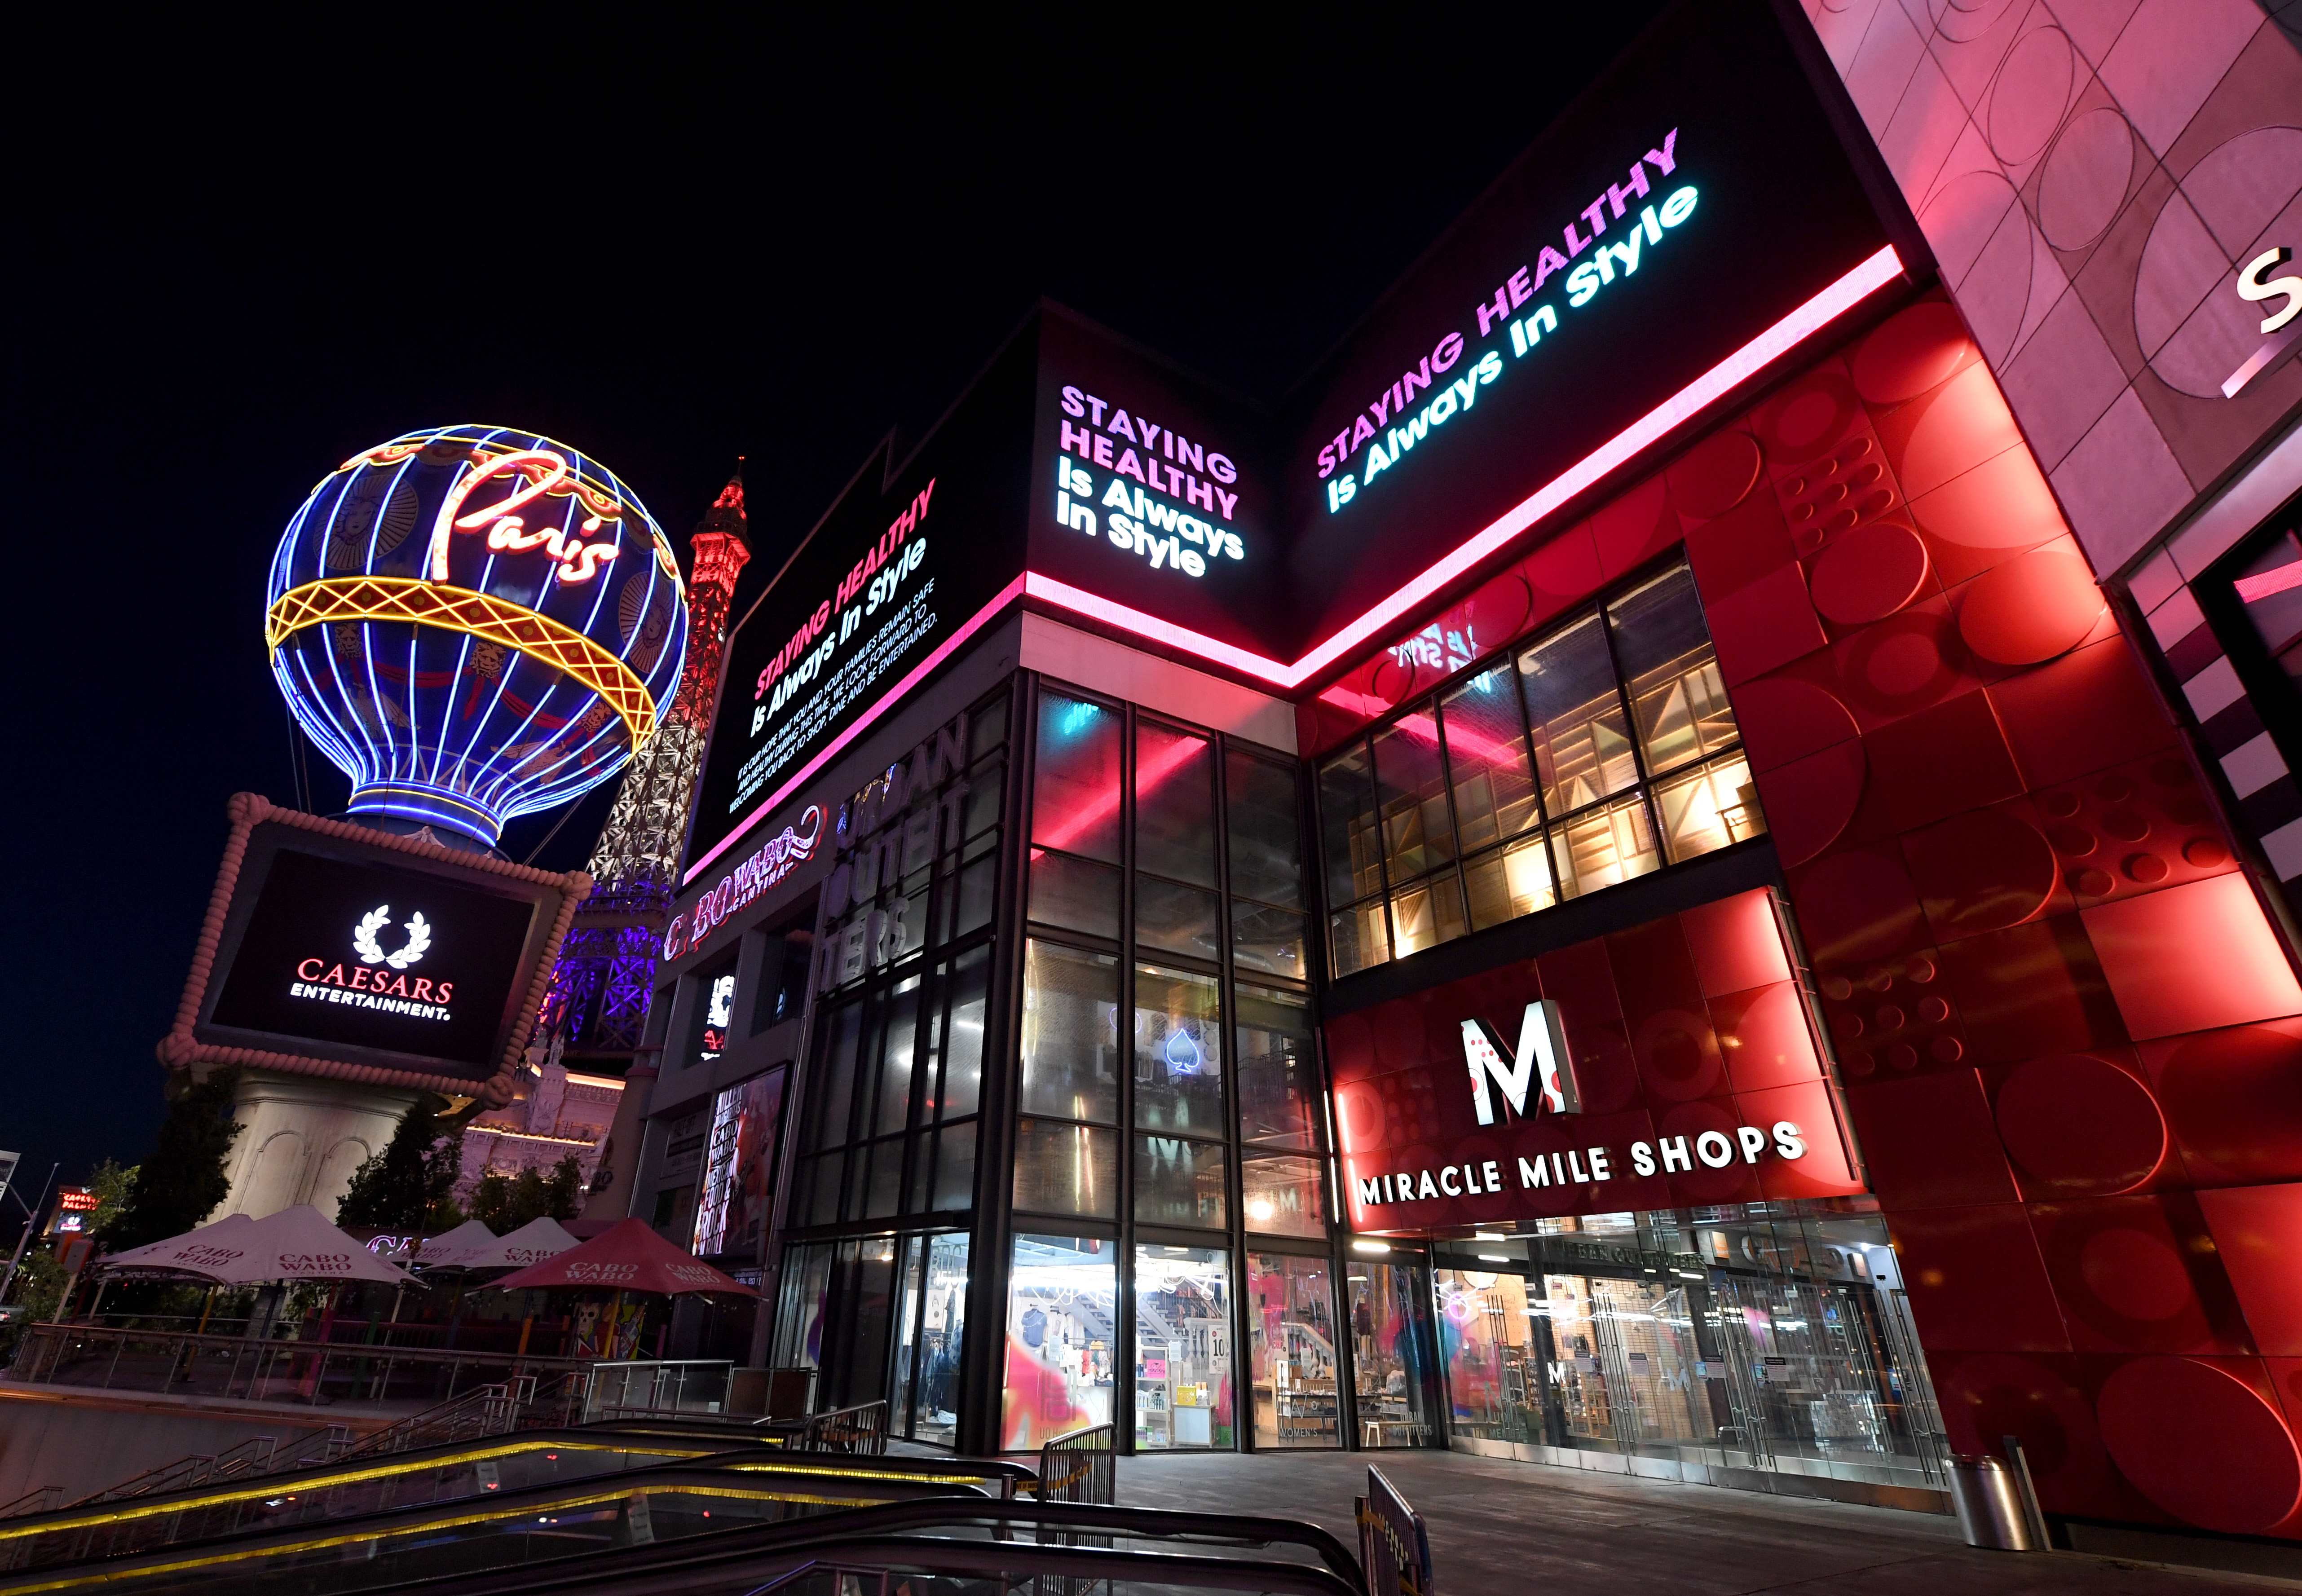 Las Vegas Casinos Close Their Doors In Response To Coronavirus Pandemic